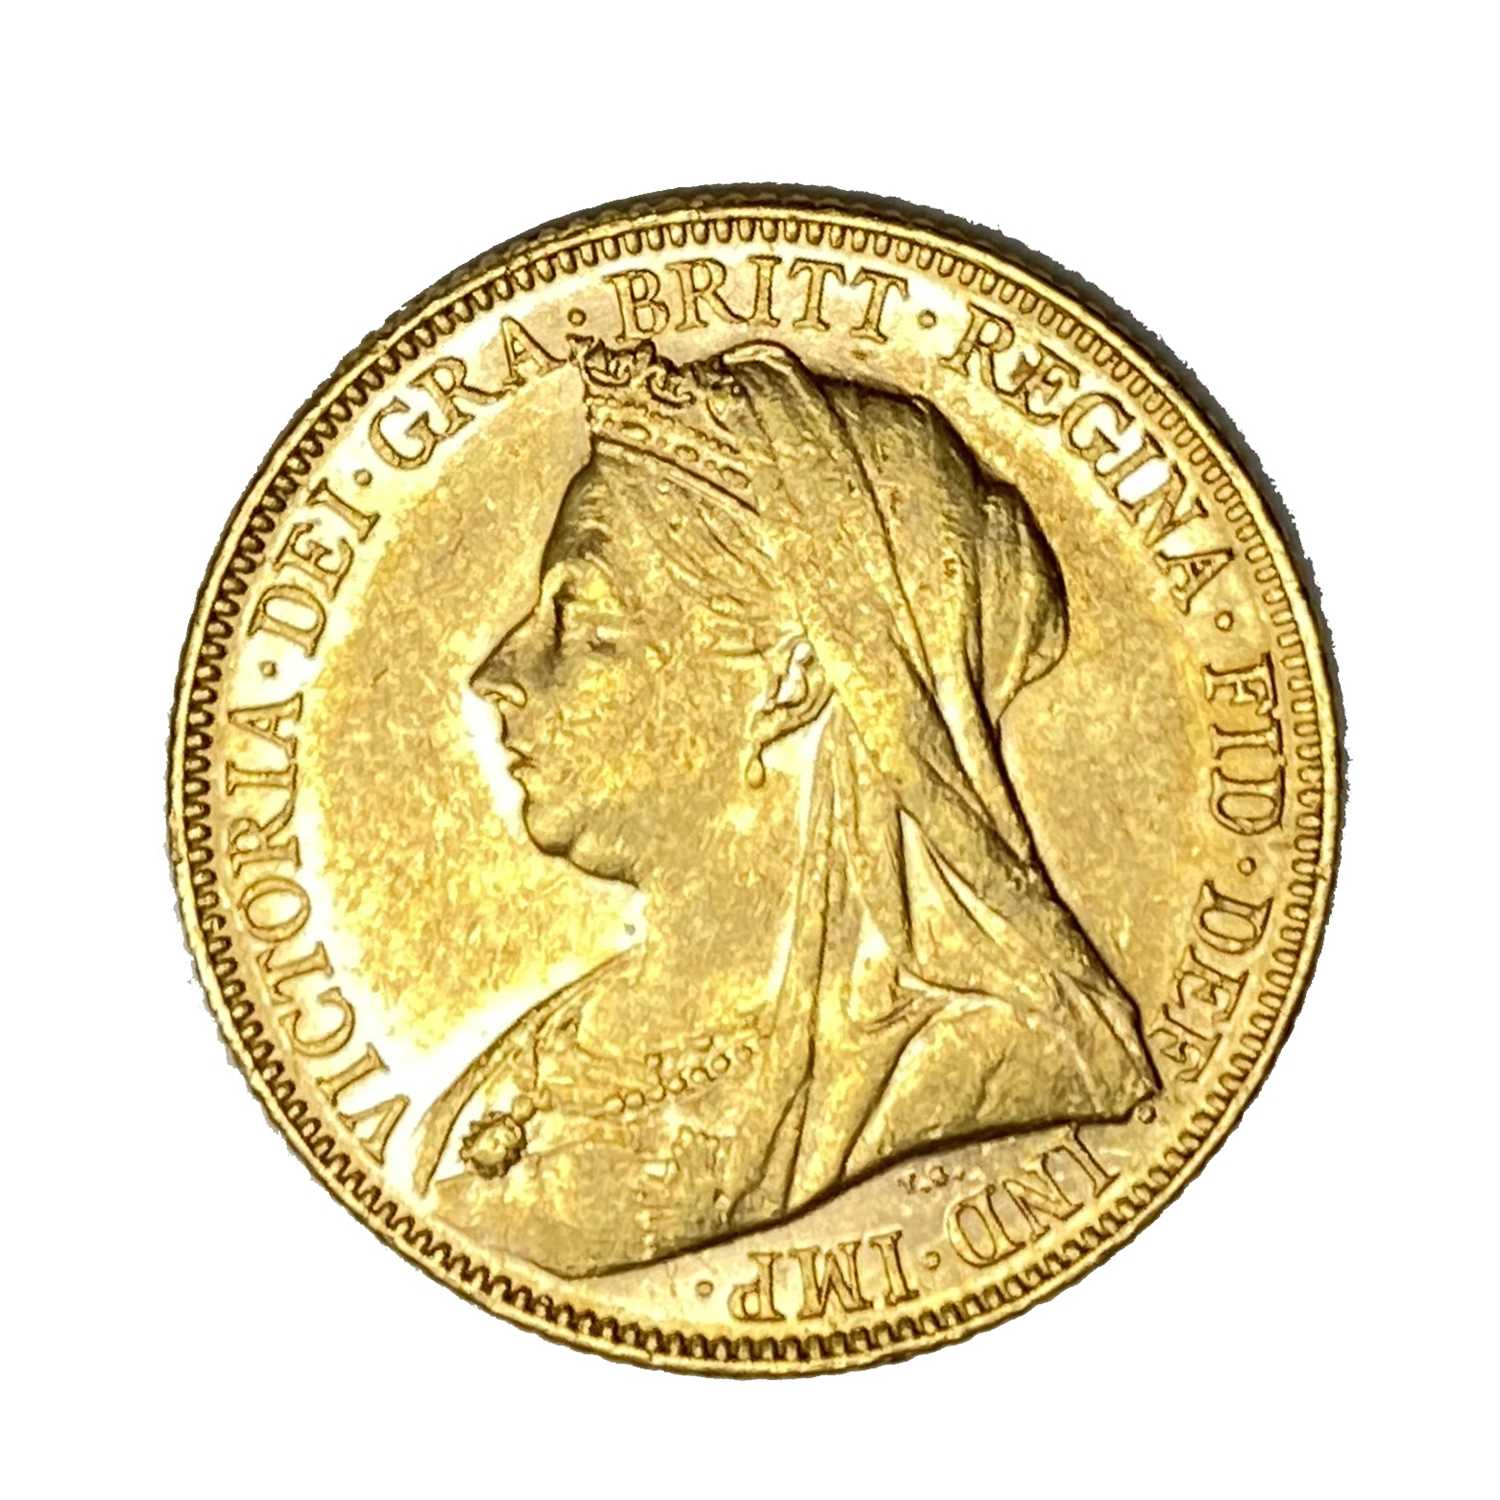 Lot 12 - Queen Victoria gold Sovereign coin, 1899